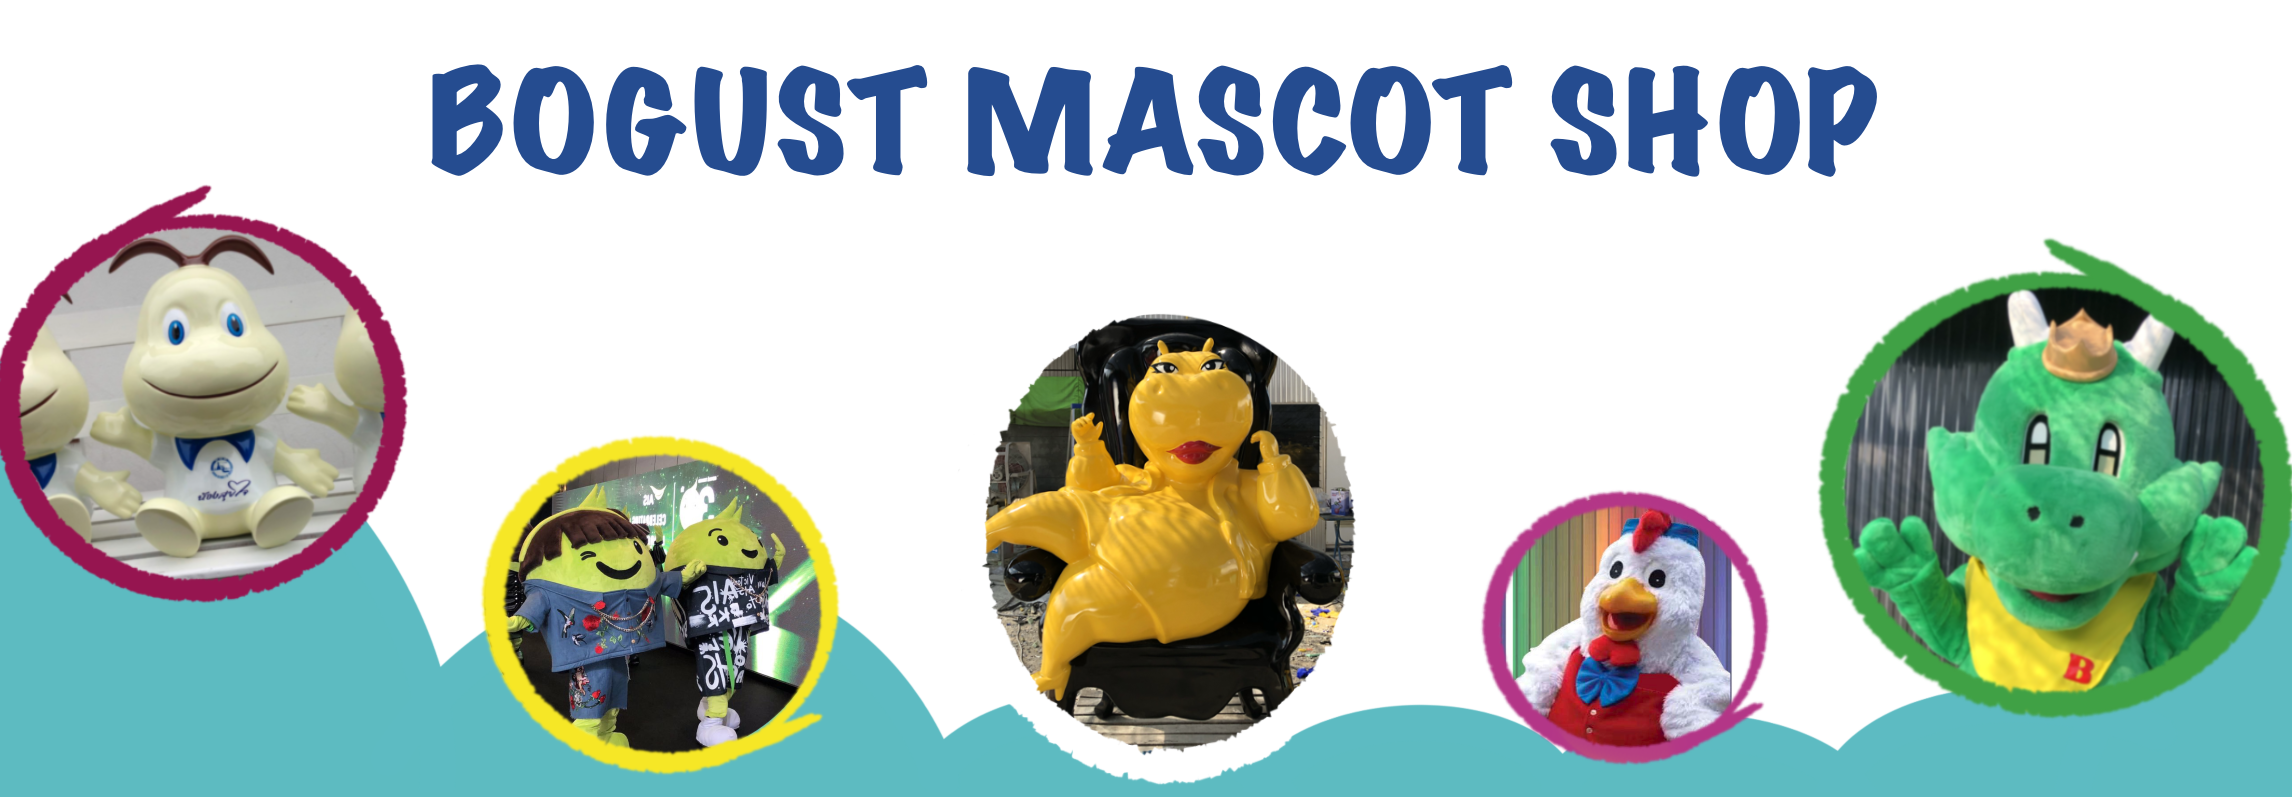 Bogust Mascot Shop H1